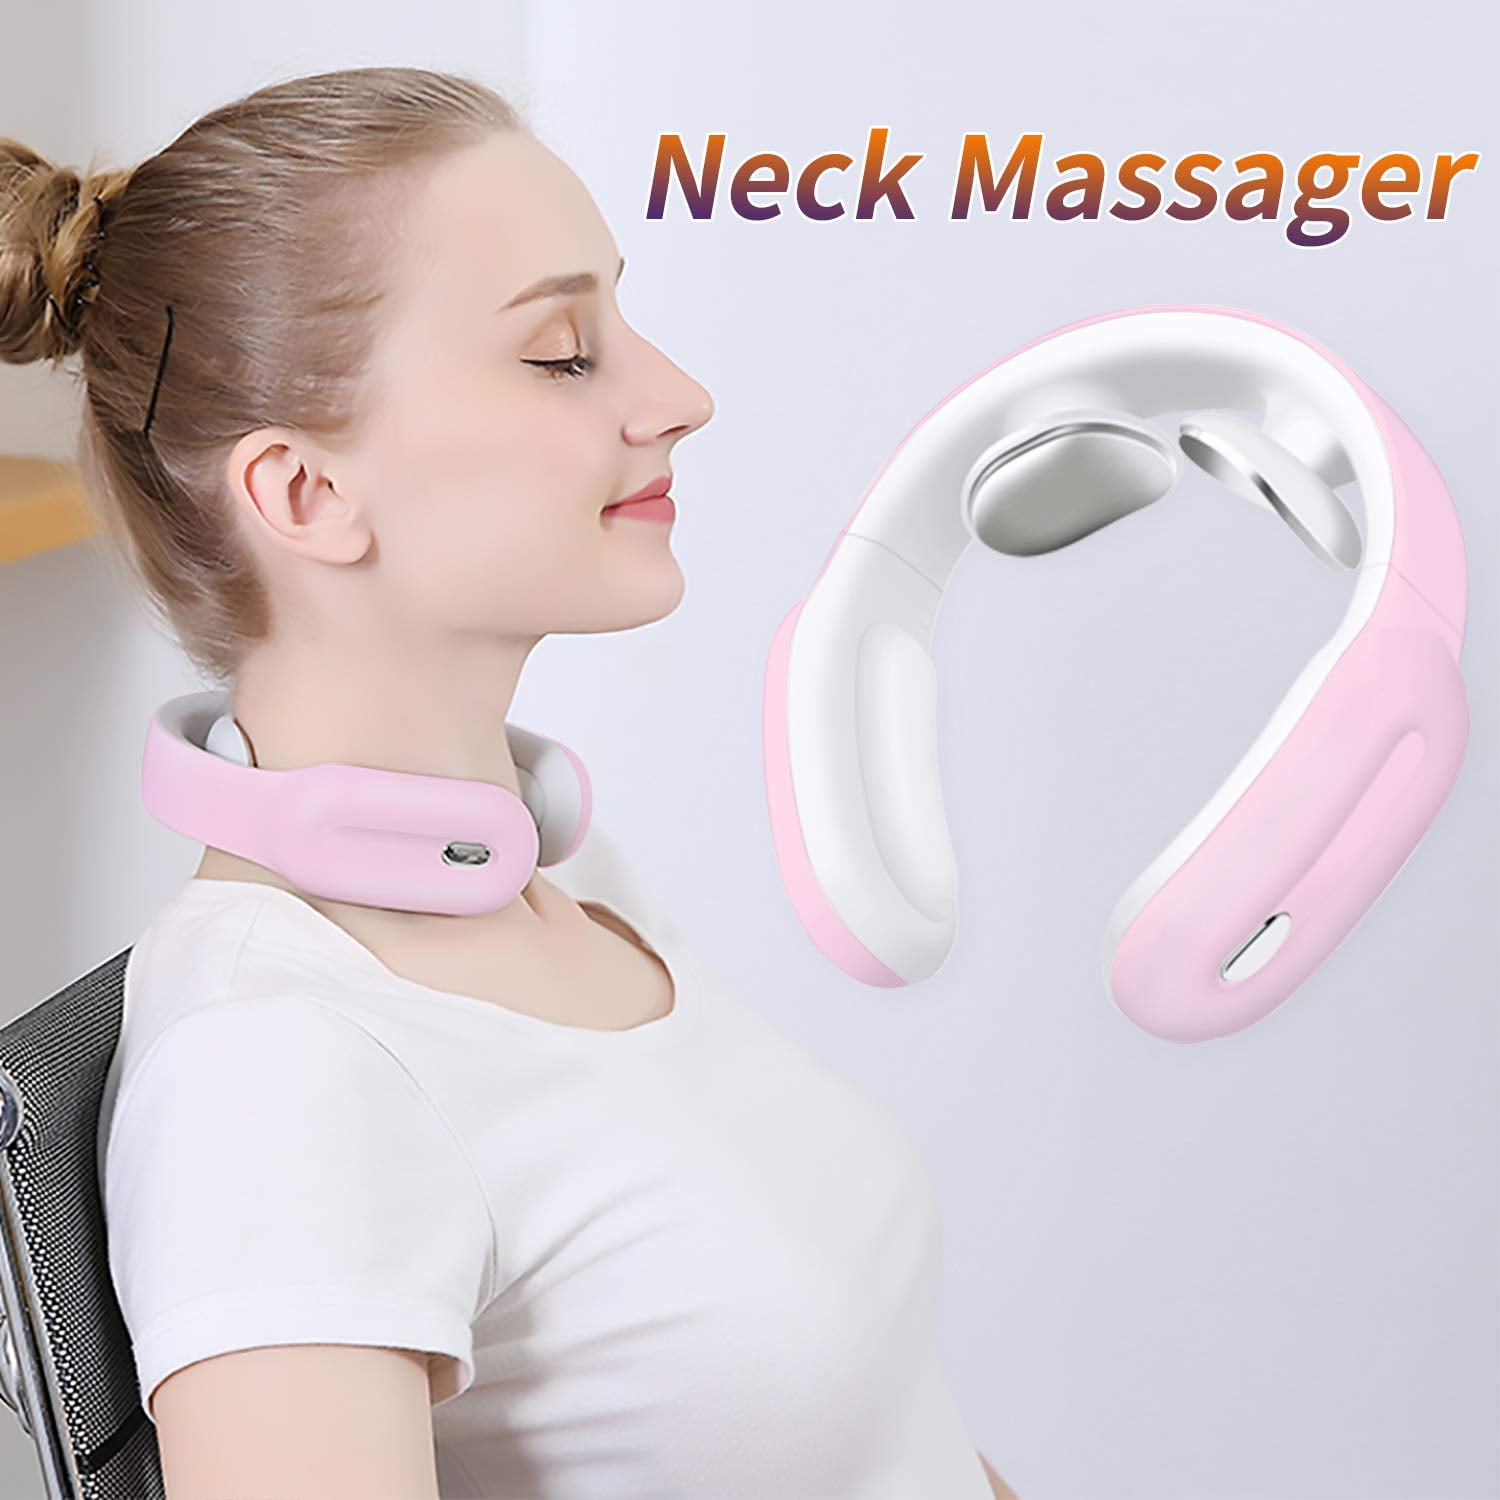 Neck Massagerintelligent Wireless Portable 4d Neck Massage Equipmentdeep Tissue Massage